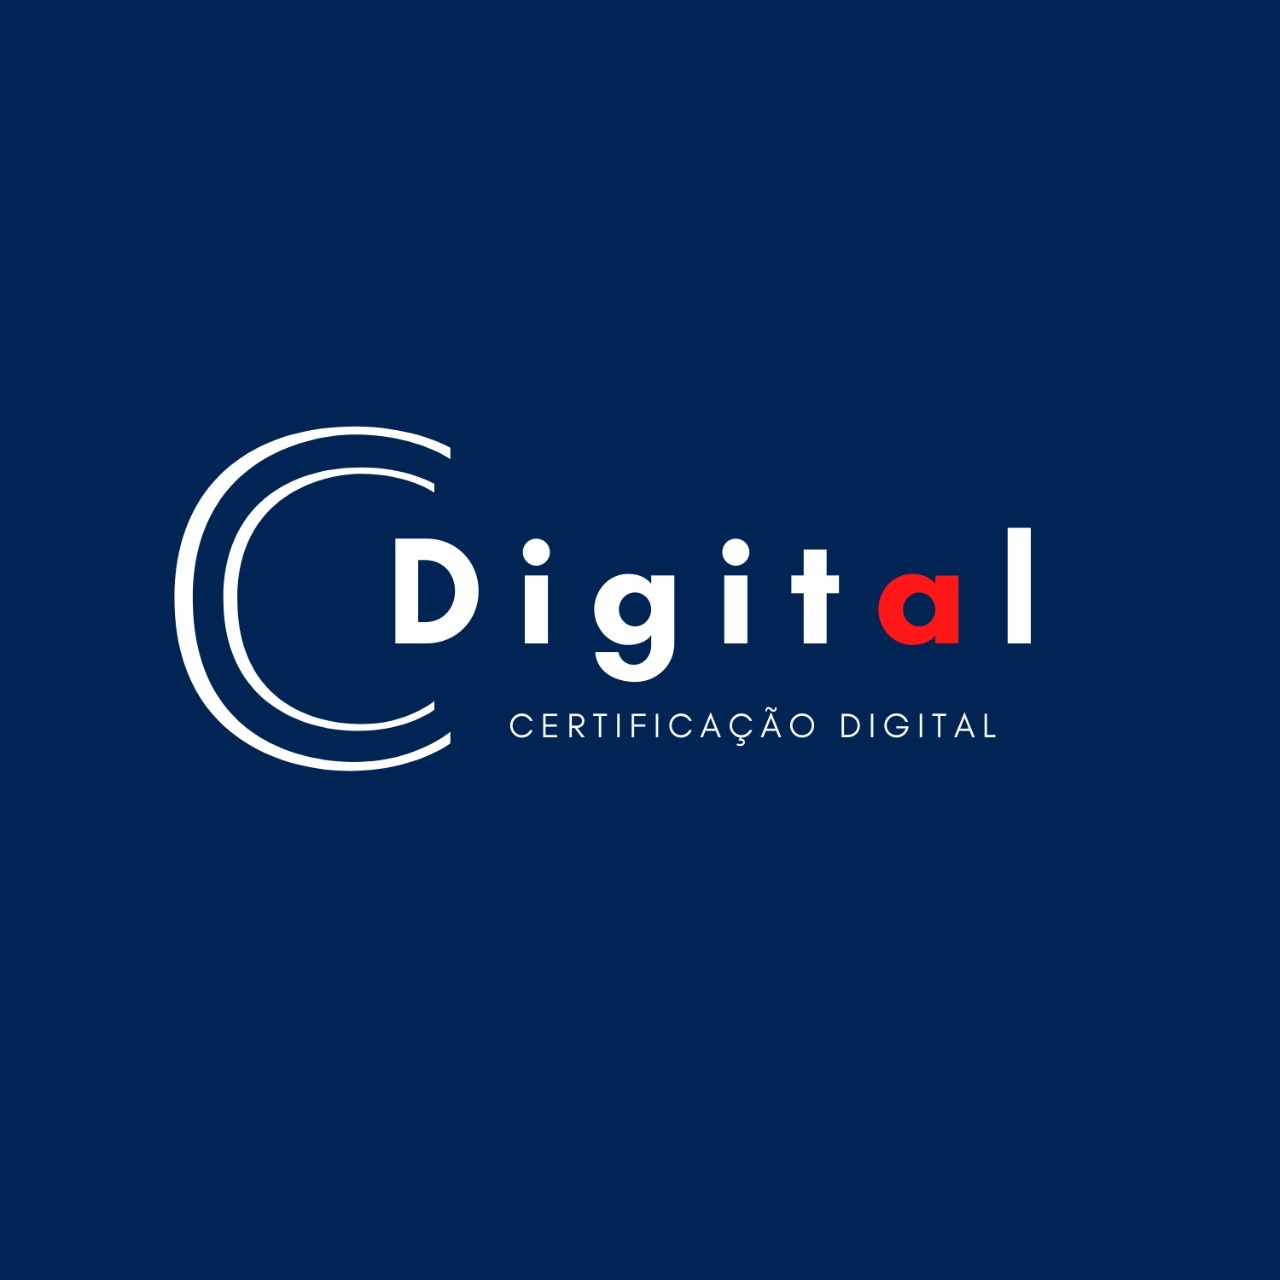 Logotipo do parceiro AR Cdigital &#8211; Corium Solução Empresarial &#8211; 5%